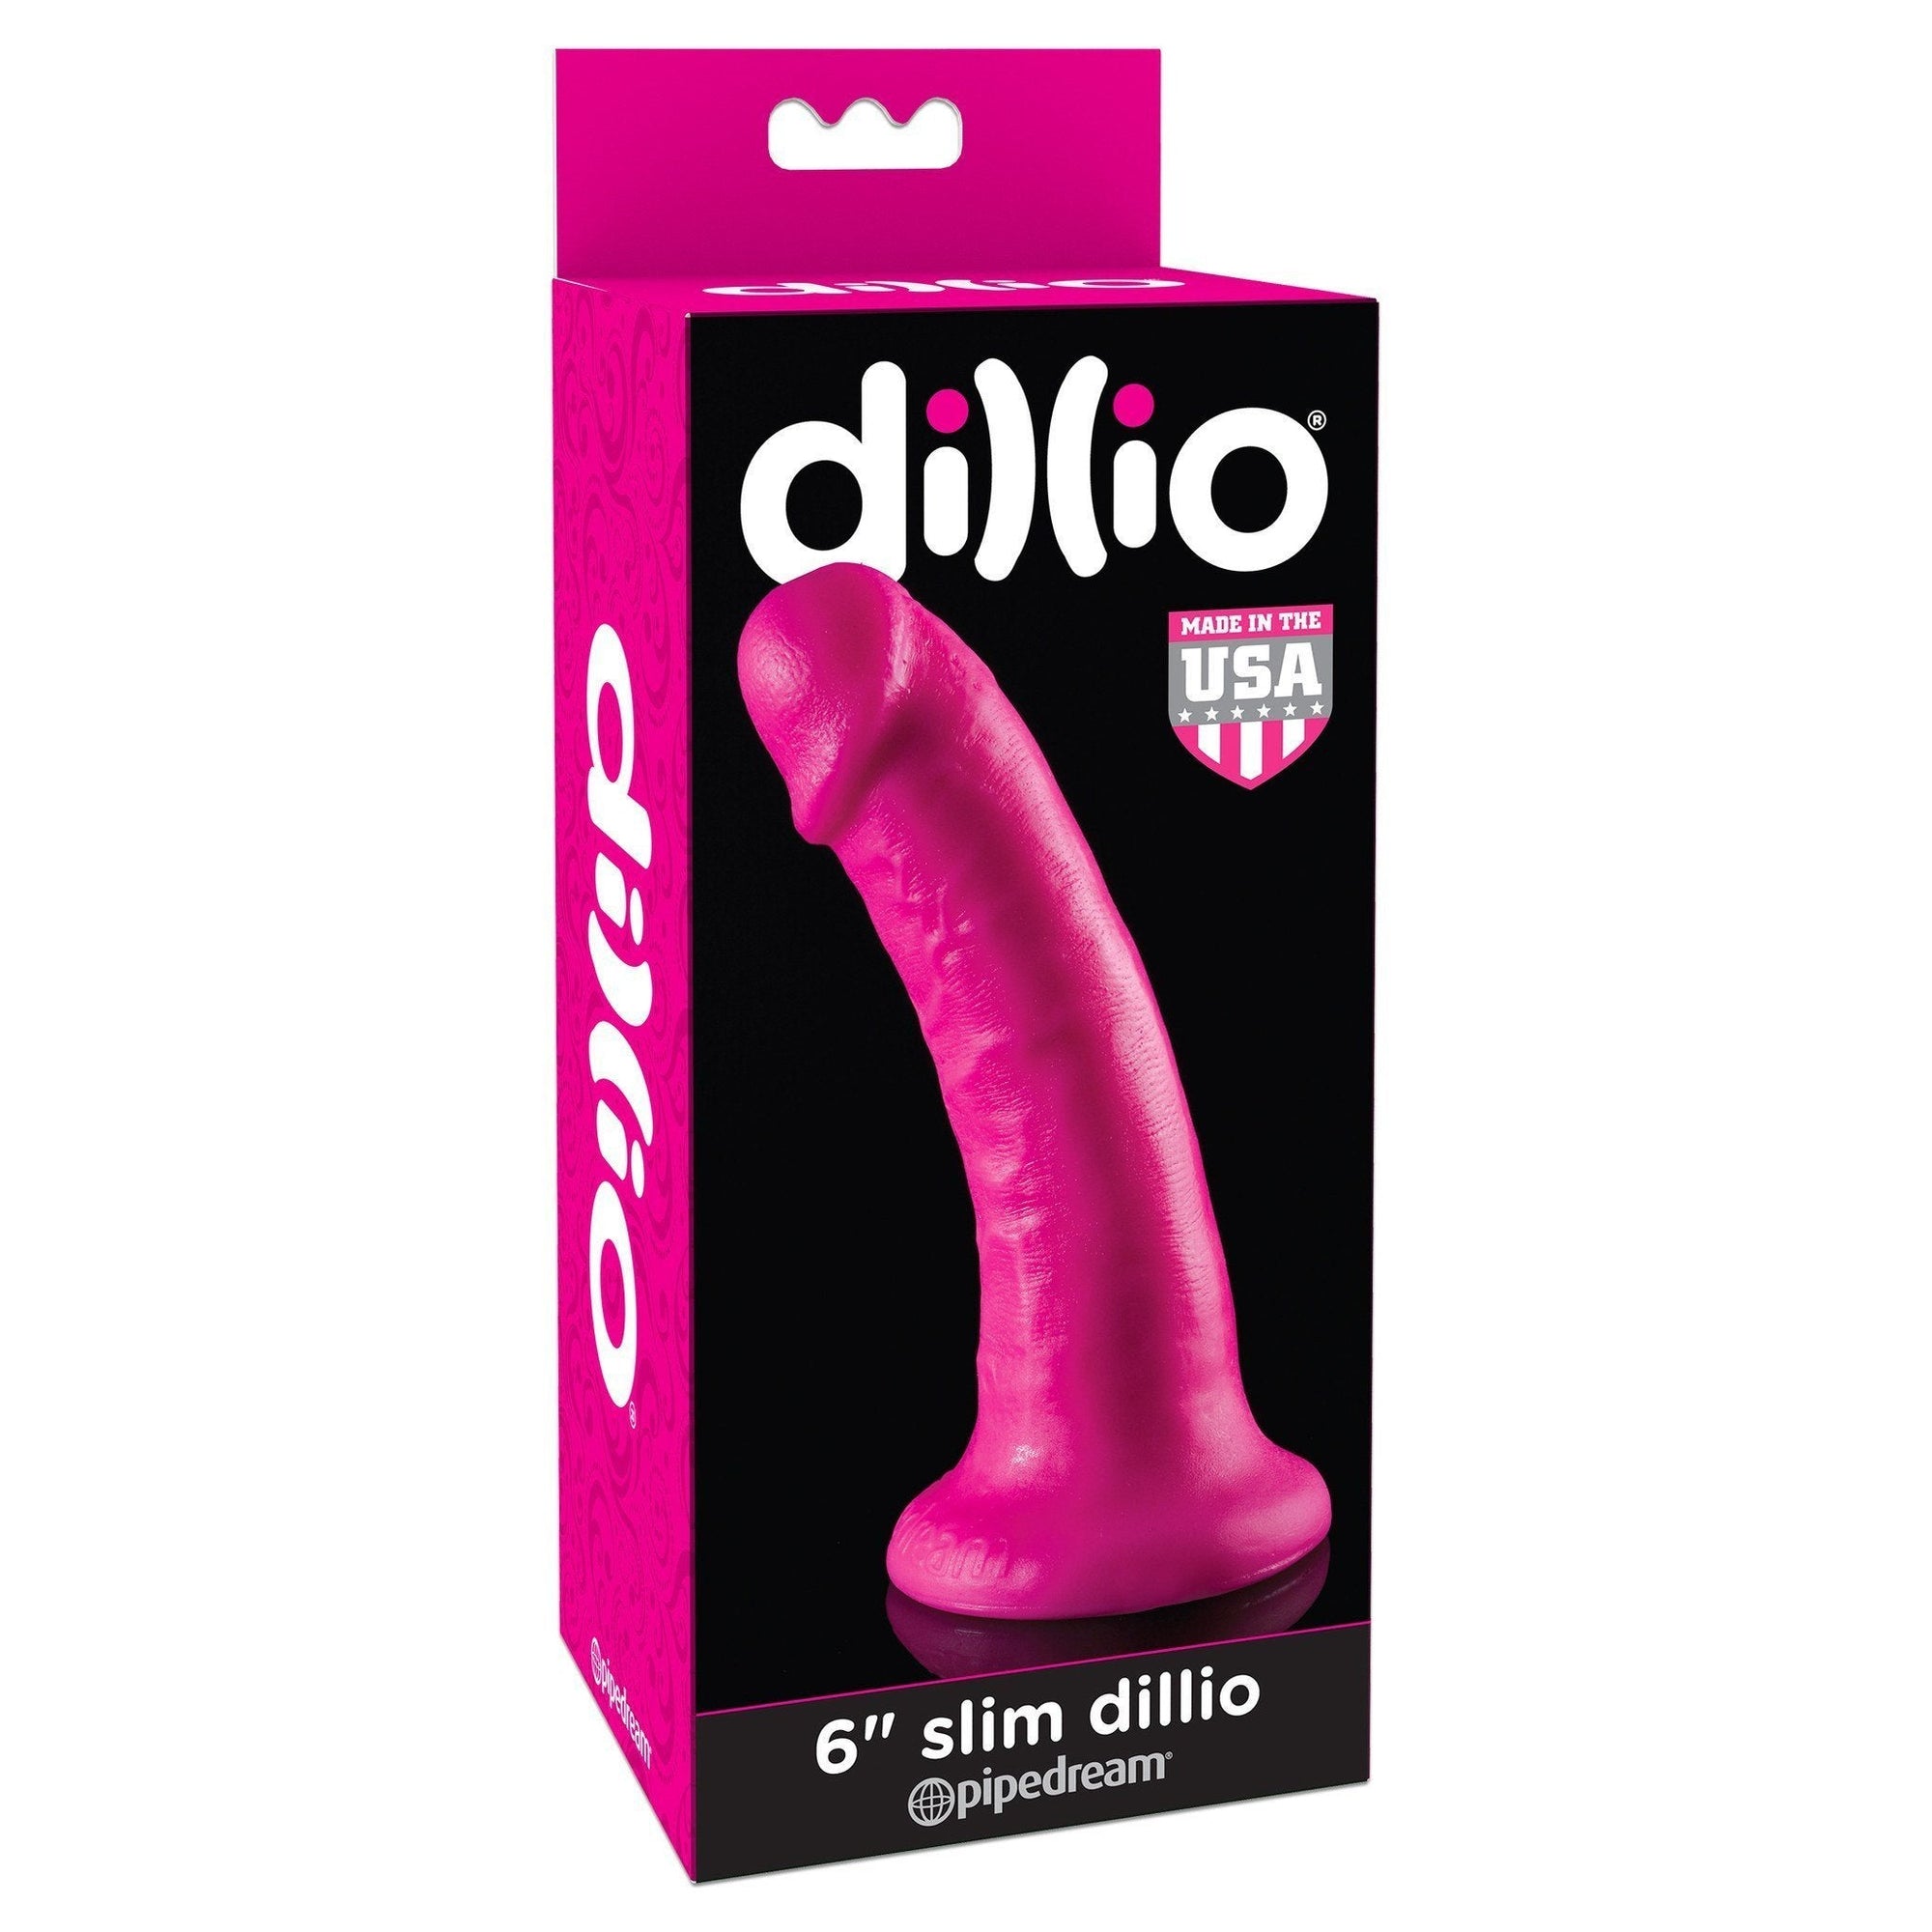 Pipedream - Dillio 6" Slim Dillio Dildo (Pink) -  Realistic Dildo with suction cup (Non Vibration)  Durio.sg